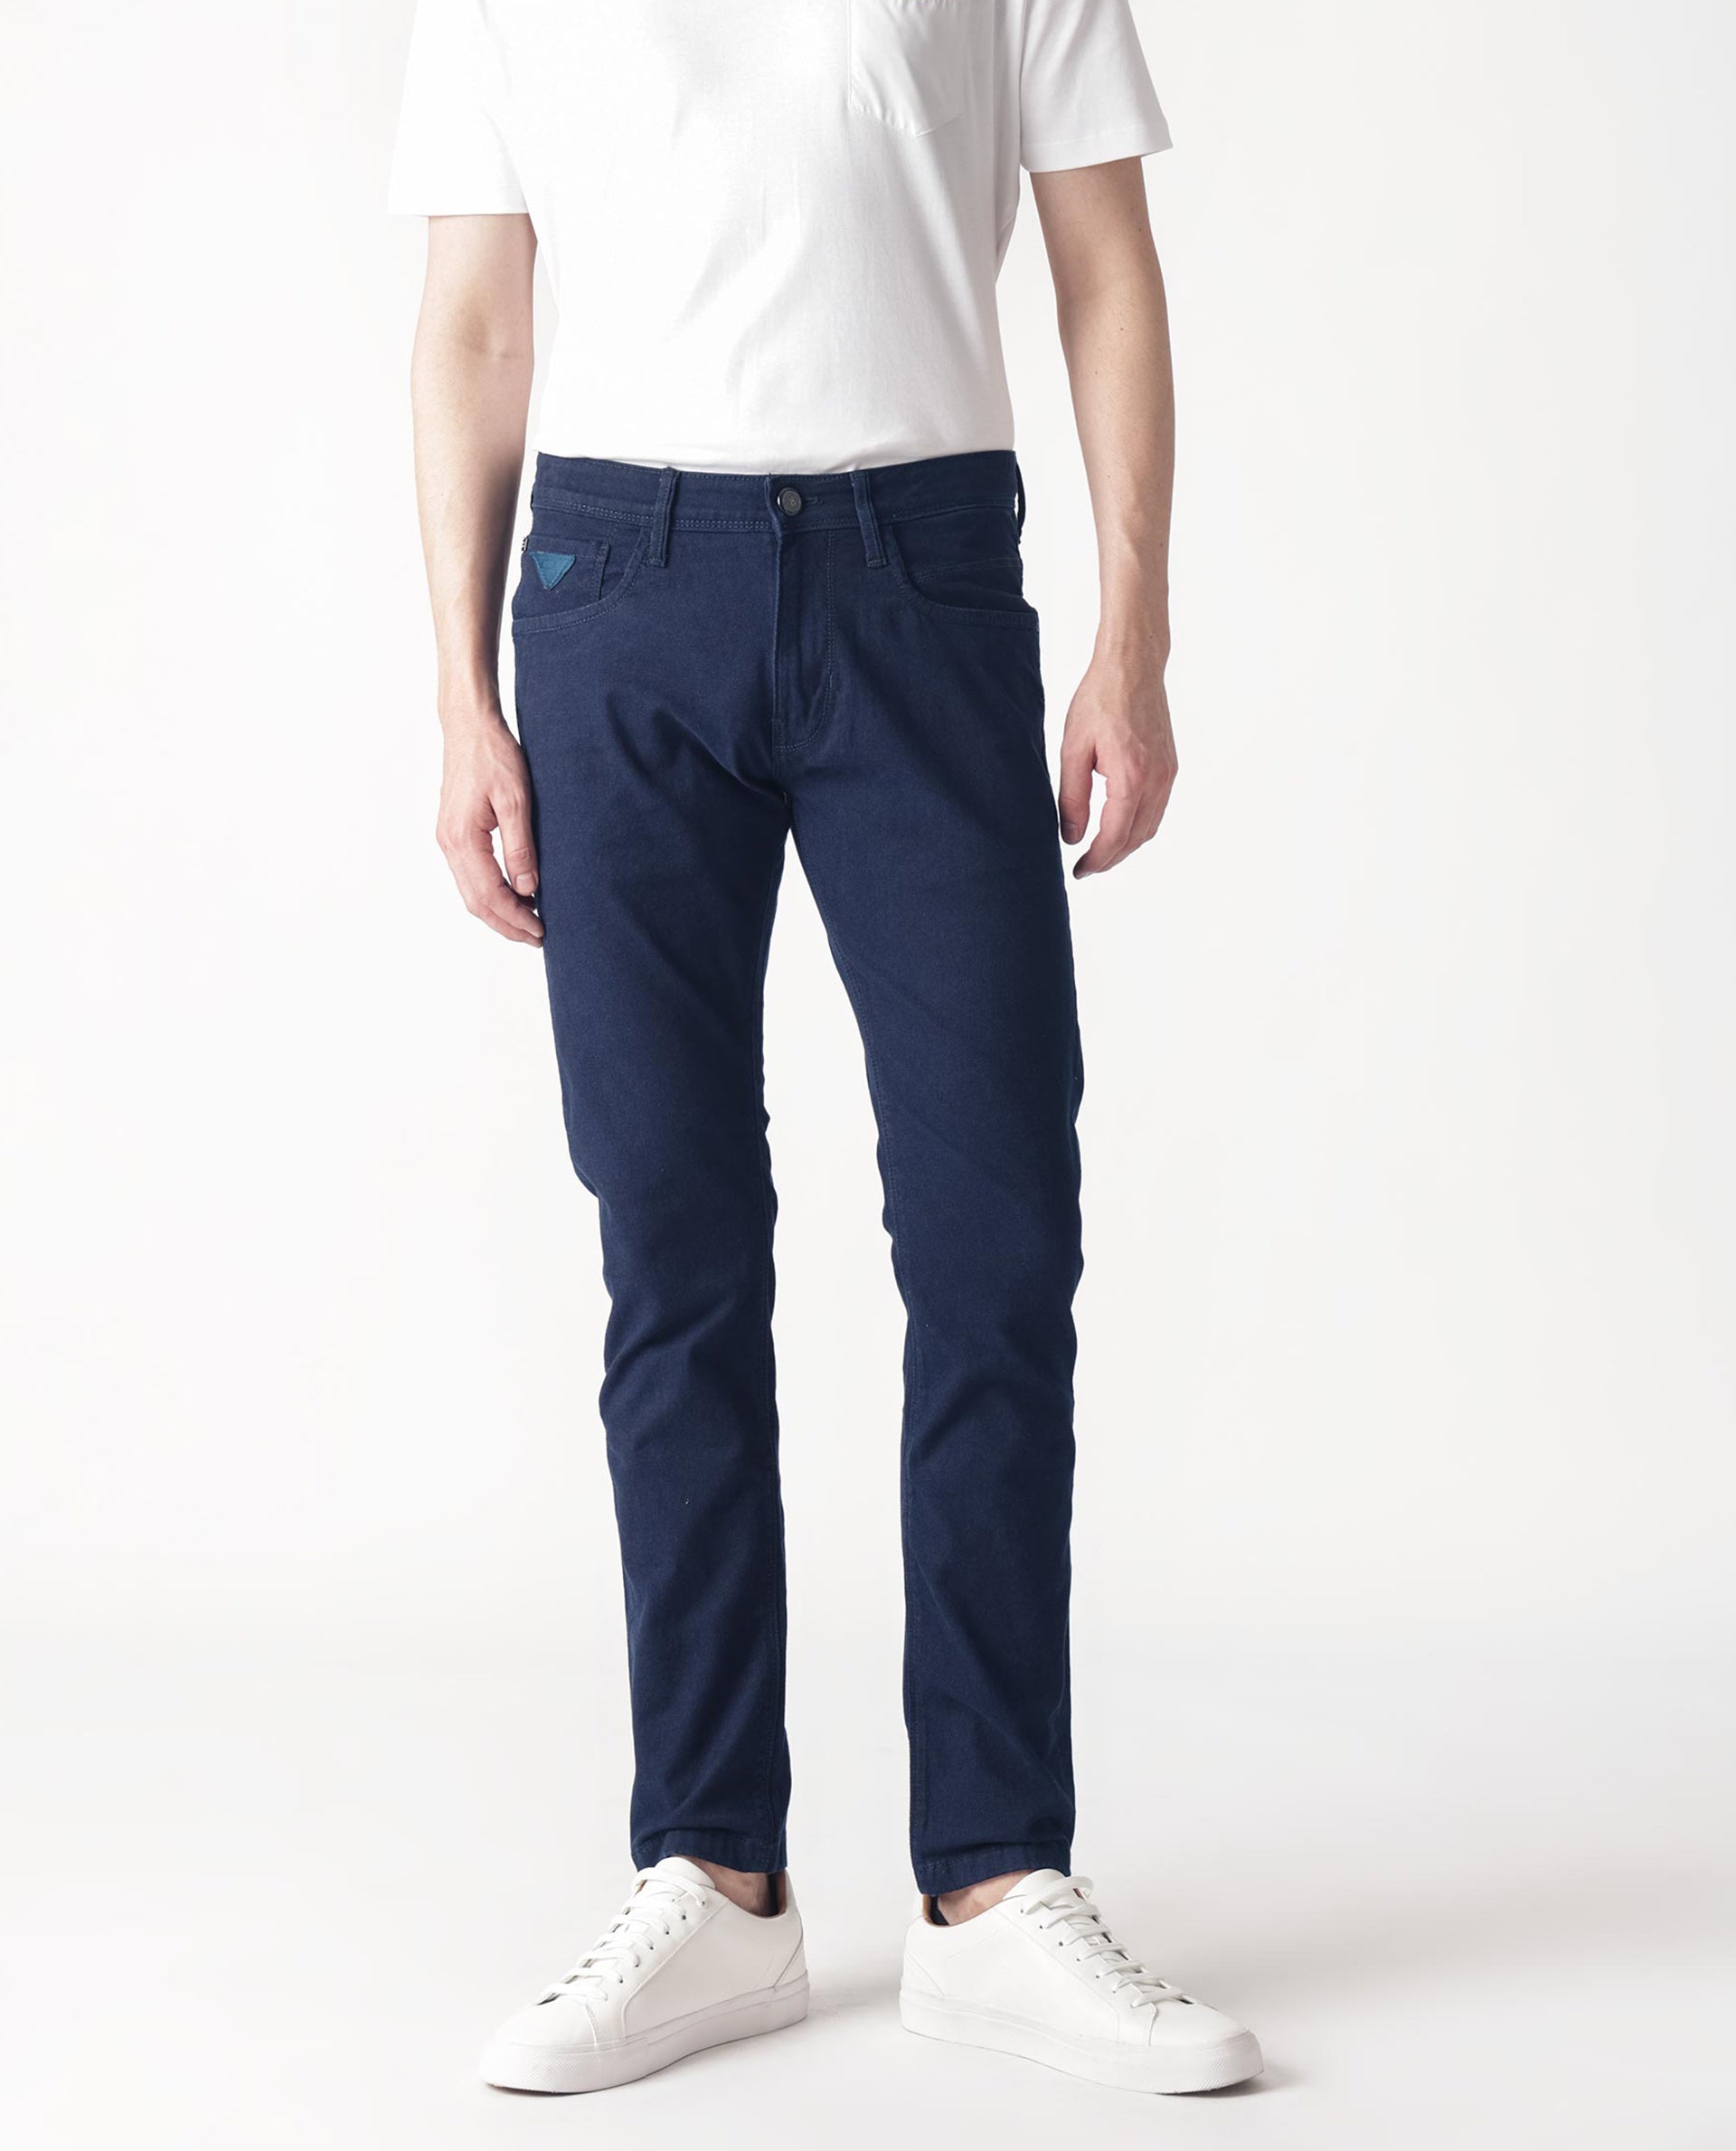 Spring Summer Jeans MCS Slim Fit - Online Shop Men's Clothing